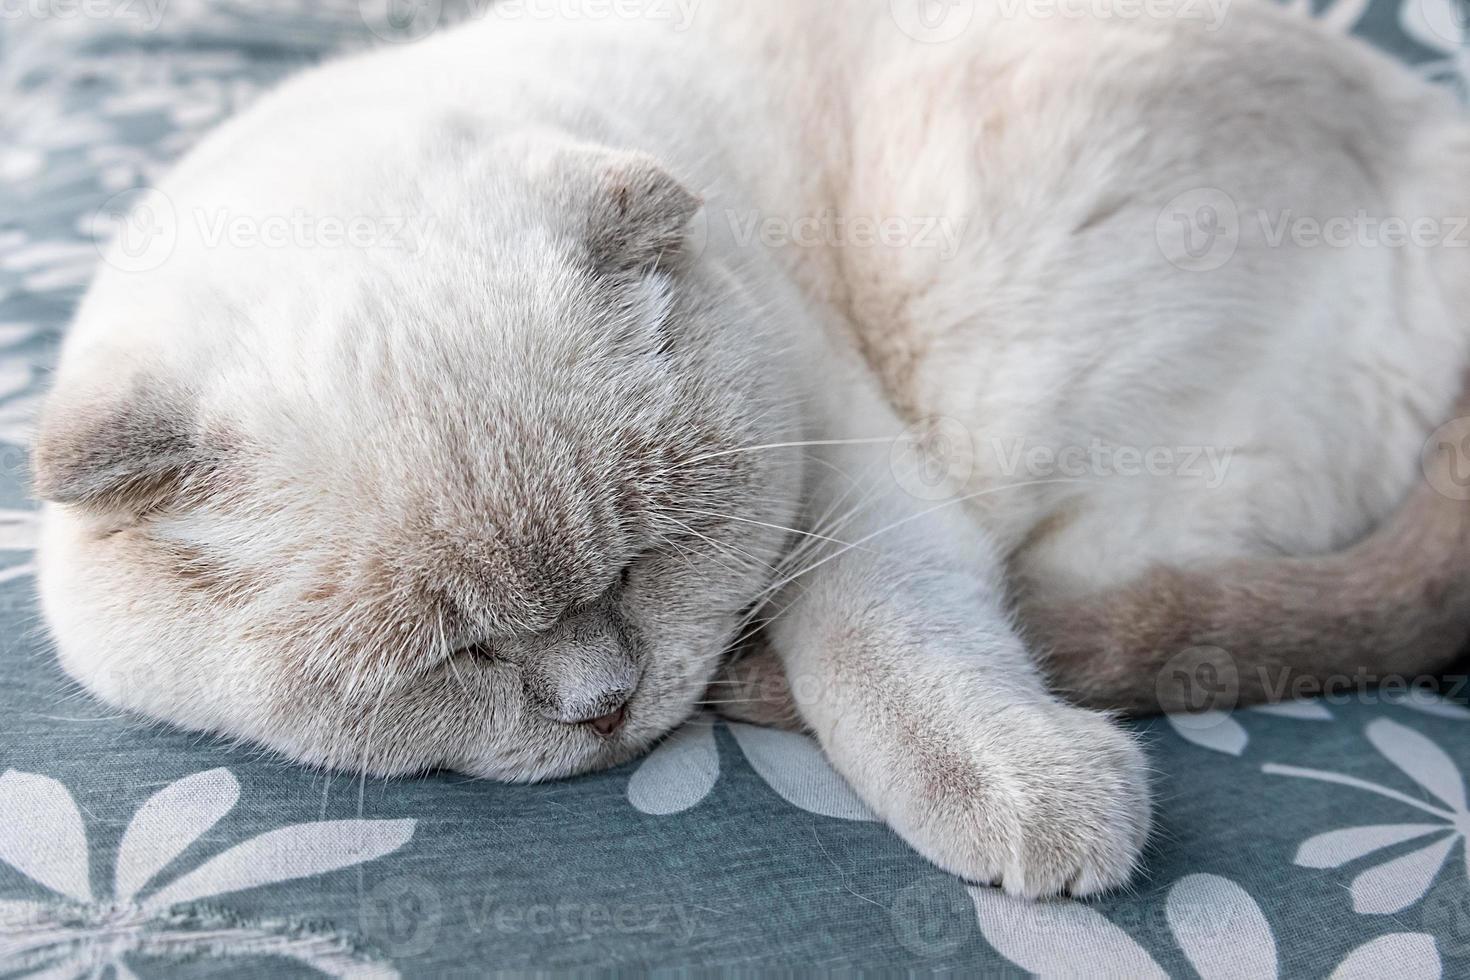 drôle de chat britannique blanc domestique à poil court dormant à l'intérieur à la maison. chaton se reposant et se détendre sur un canapé bleu. concept de soins pour animaux de compagnie et d'animaux. photo